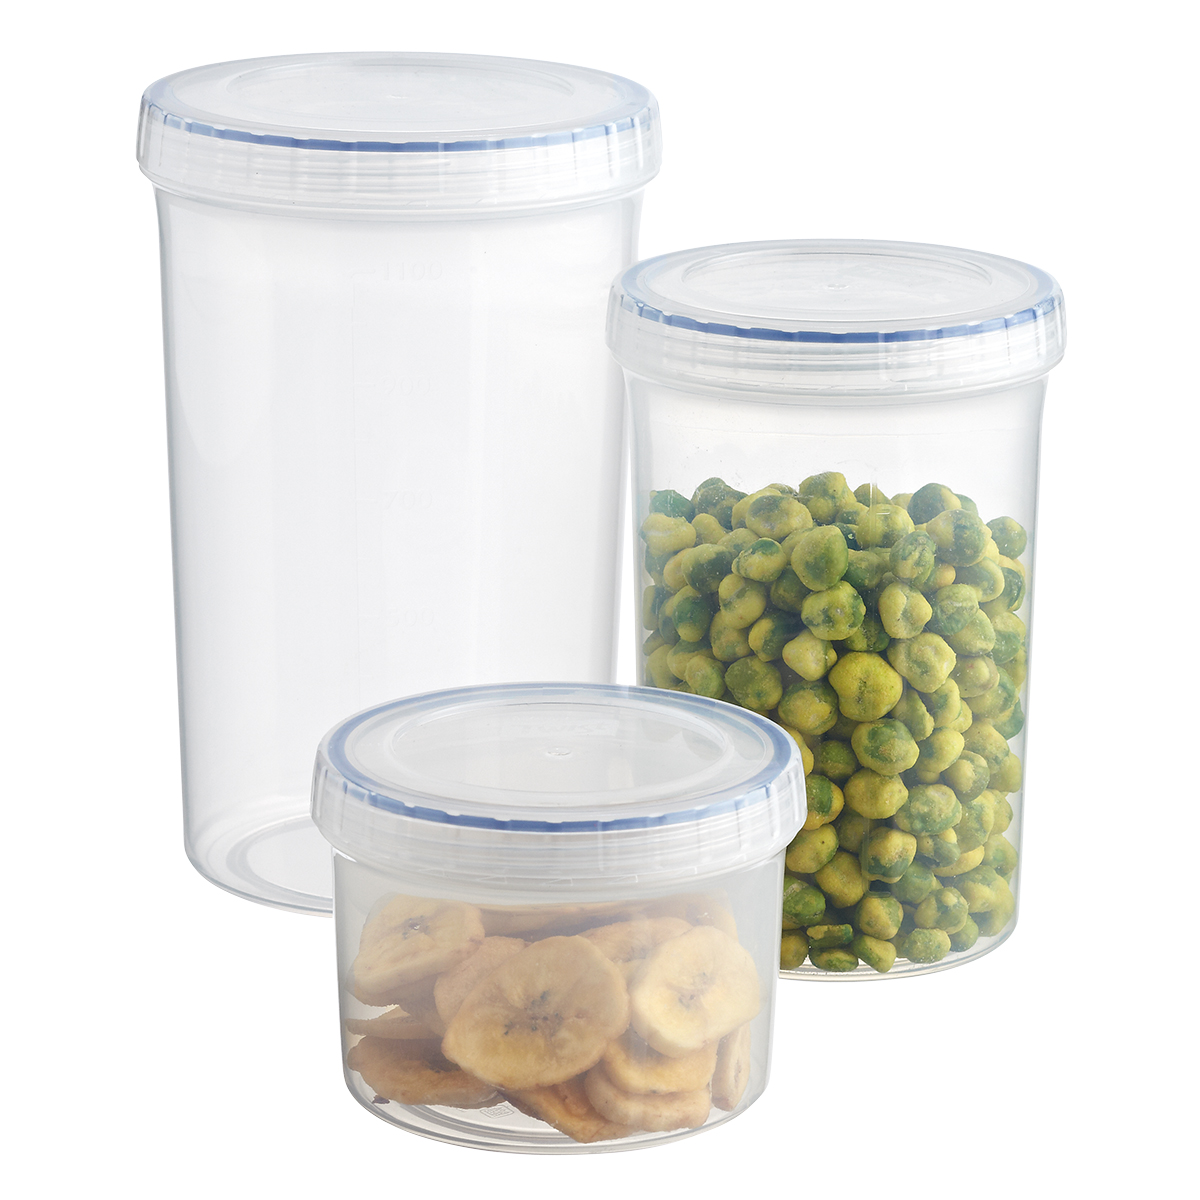 LocknLock Easy Essentials Twist 5 Oz. Food Storage Container